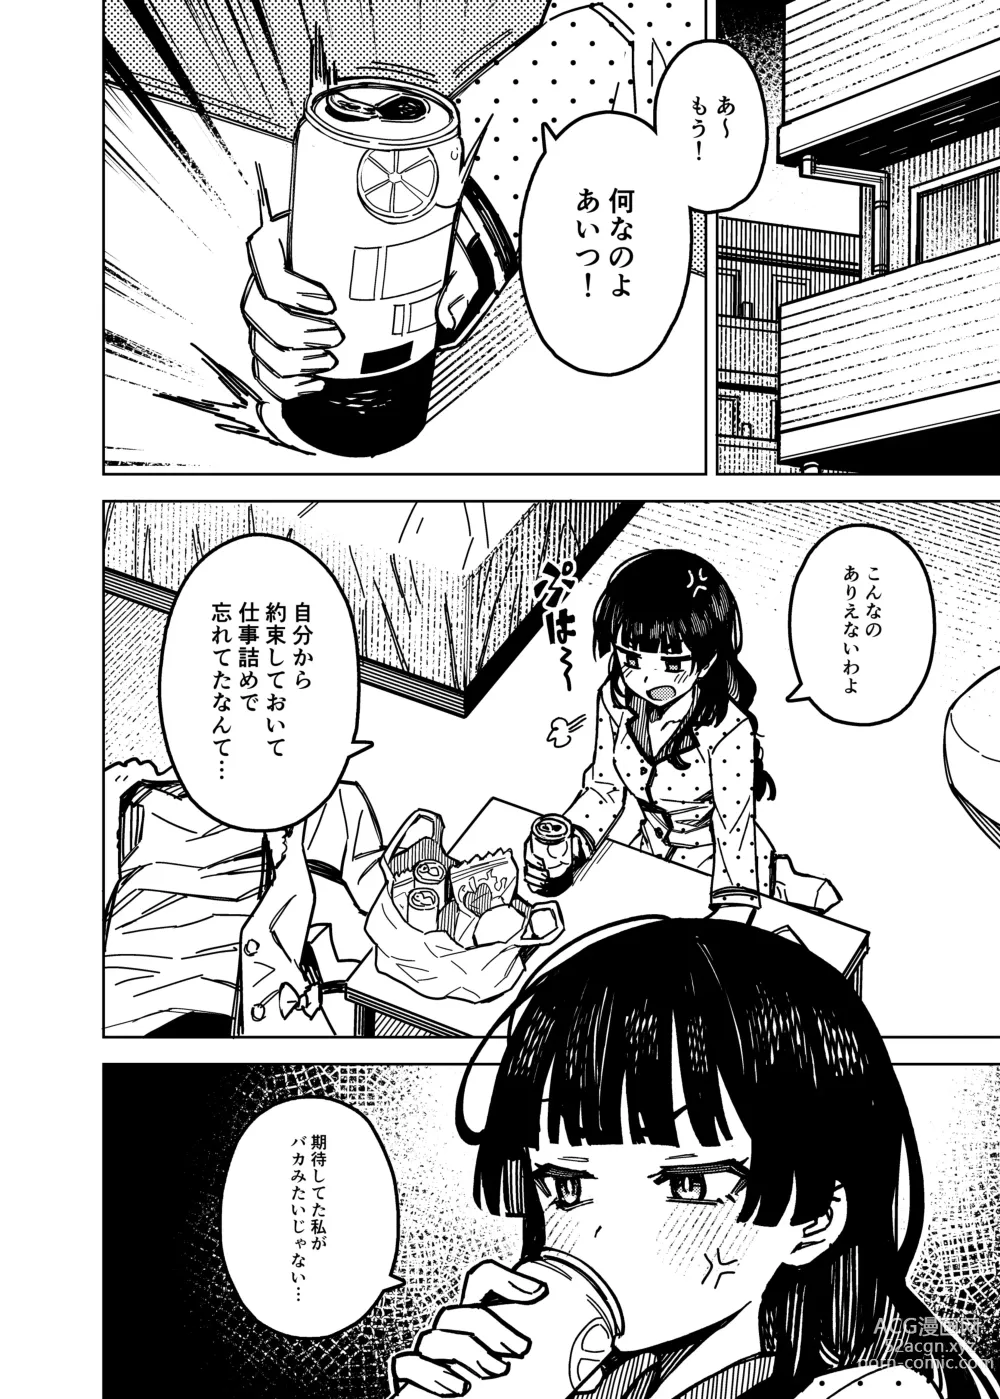 Page 6 of doujinshi Dota-can